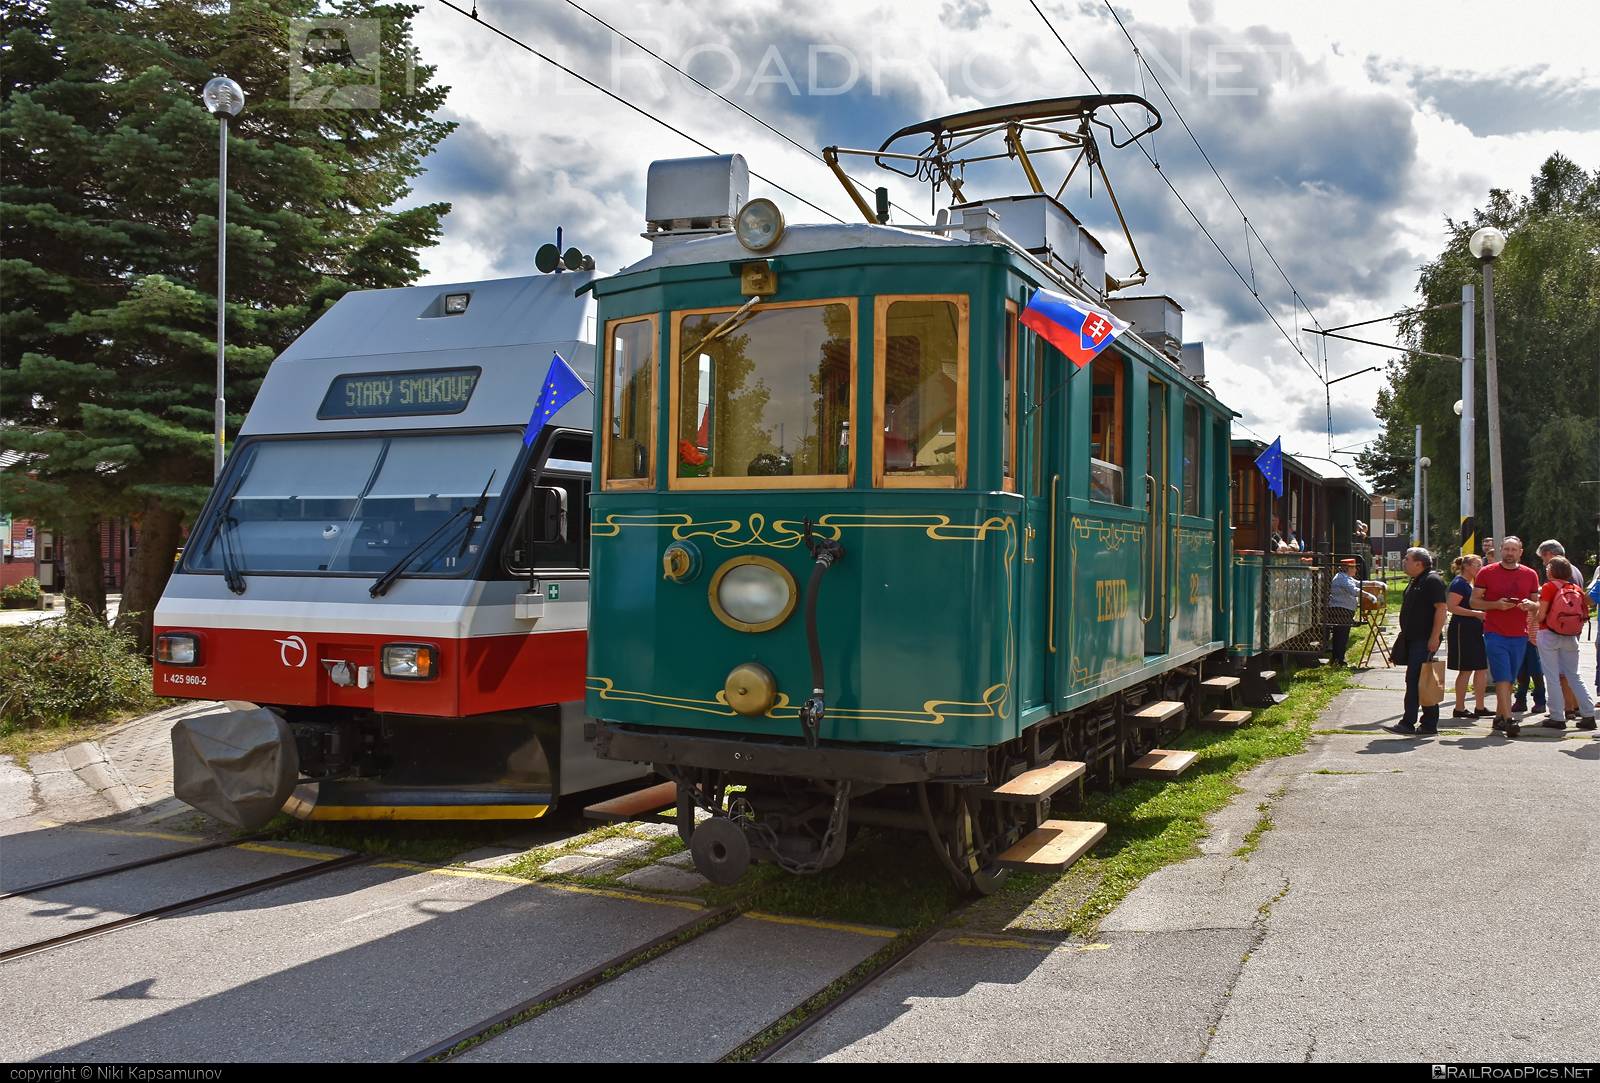 Ganz EMU 26.001 - EMU 26.001 operated by Občianske združenie Veterán klub železníc Poprad #VeteranKlubZeleznicPoprad #emu26001 #ganz #kometa #narrowgauge #tatranskakometa #tevd #tevd22 #tez